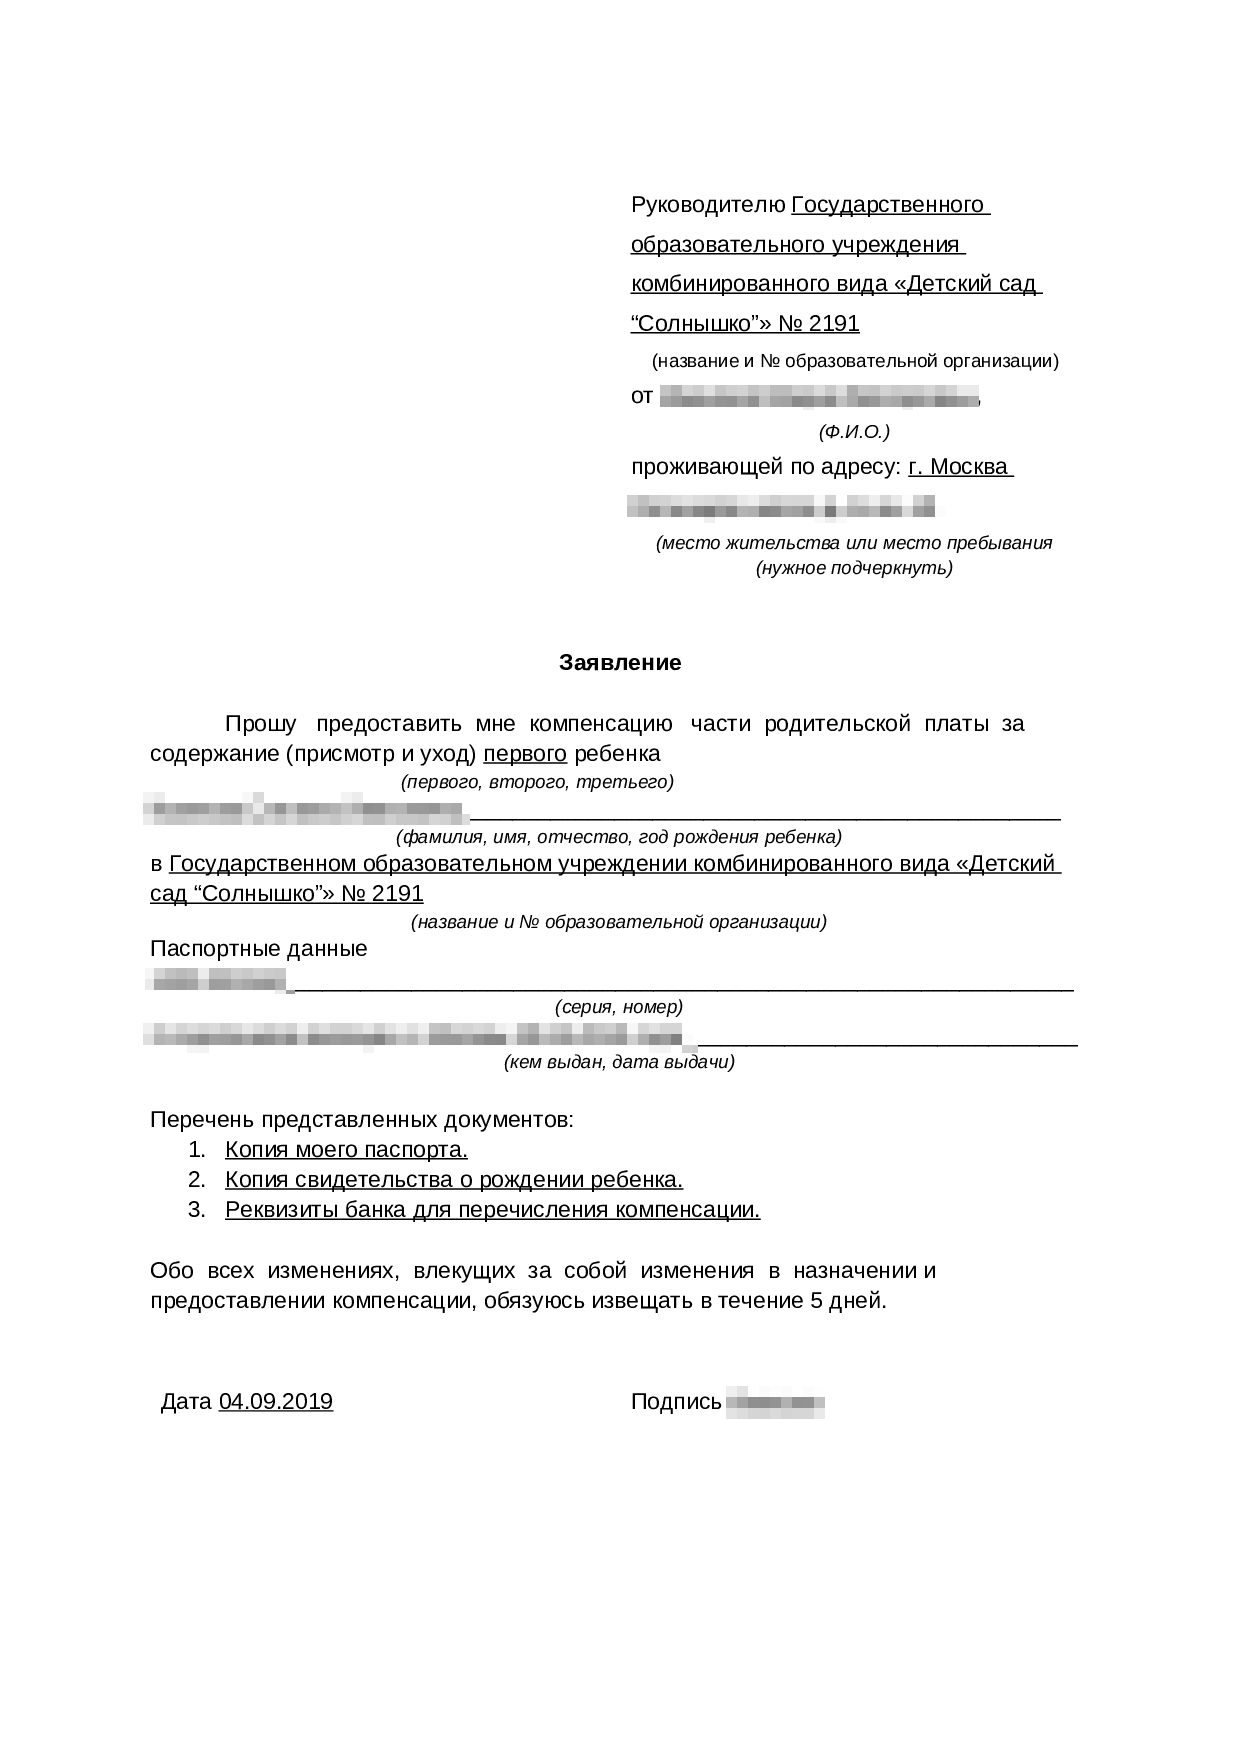 Сертификат о знании русского языка для гражданства что надо предоставить